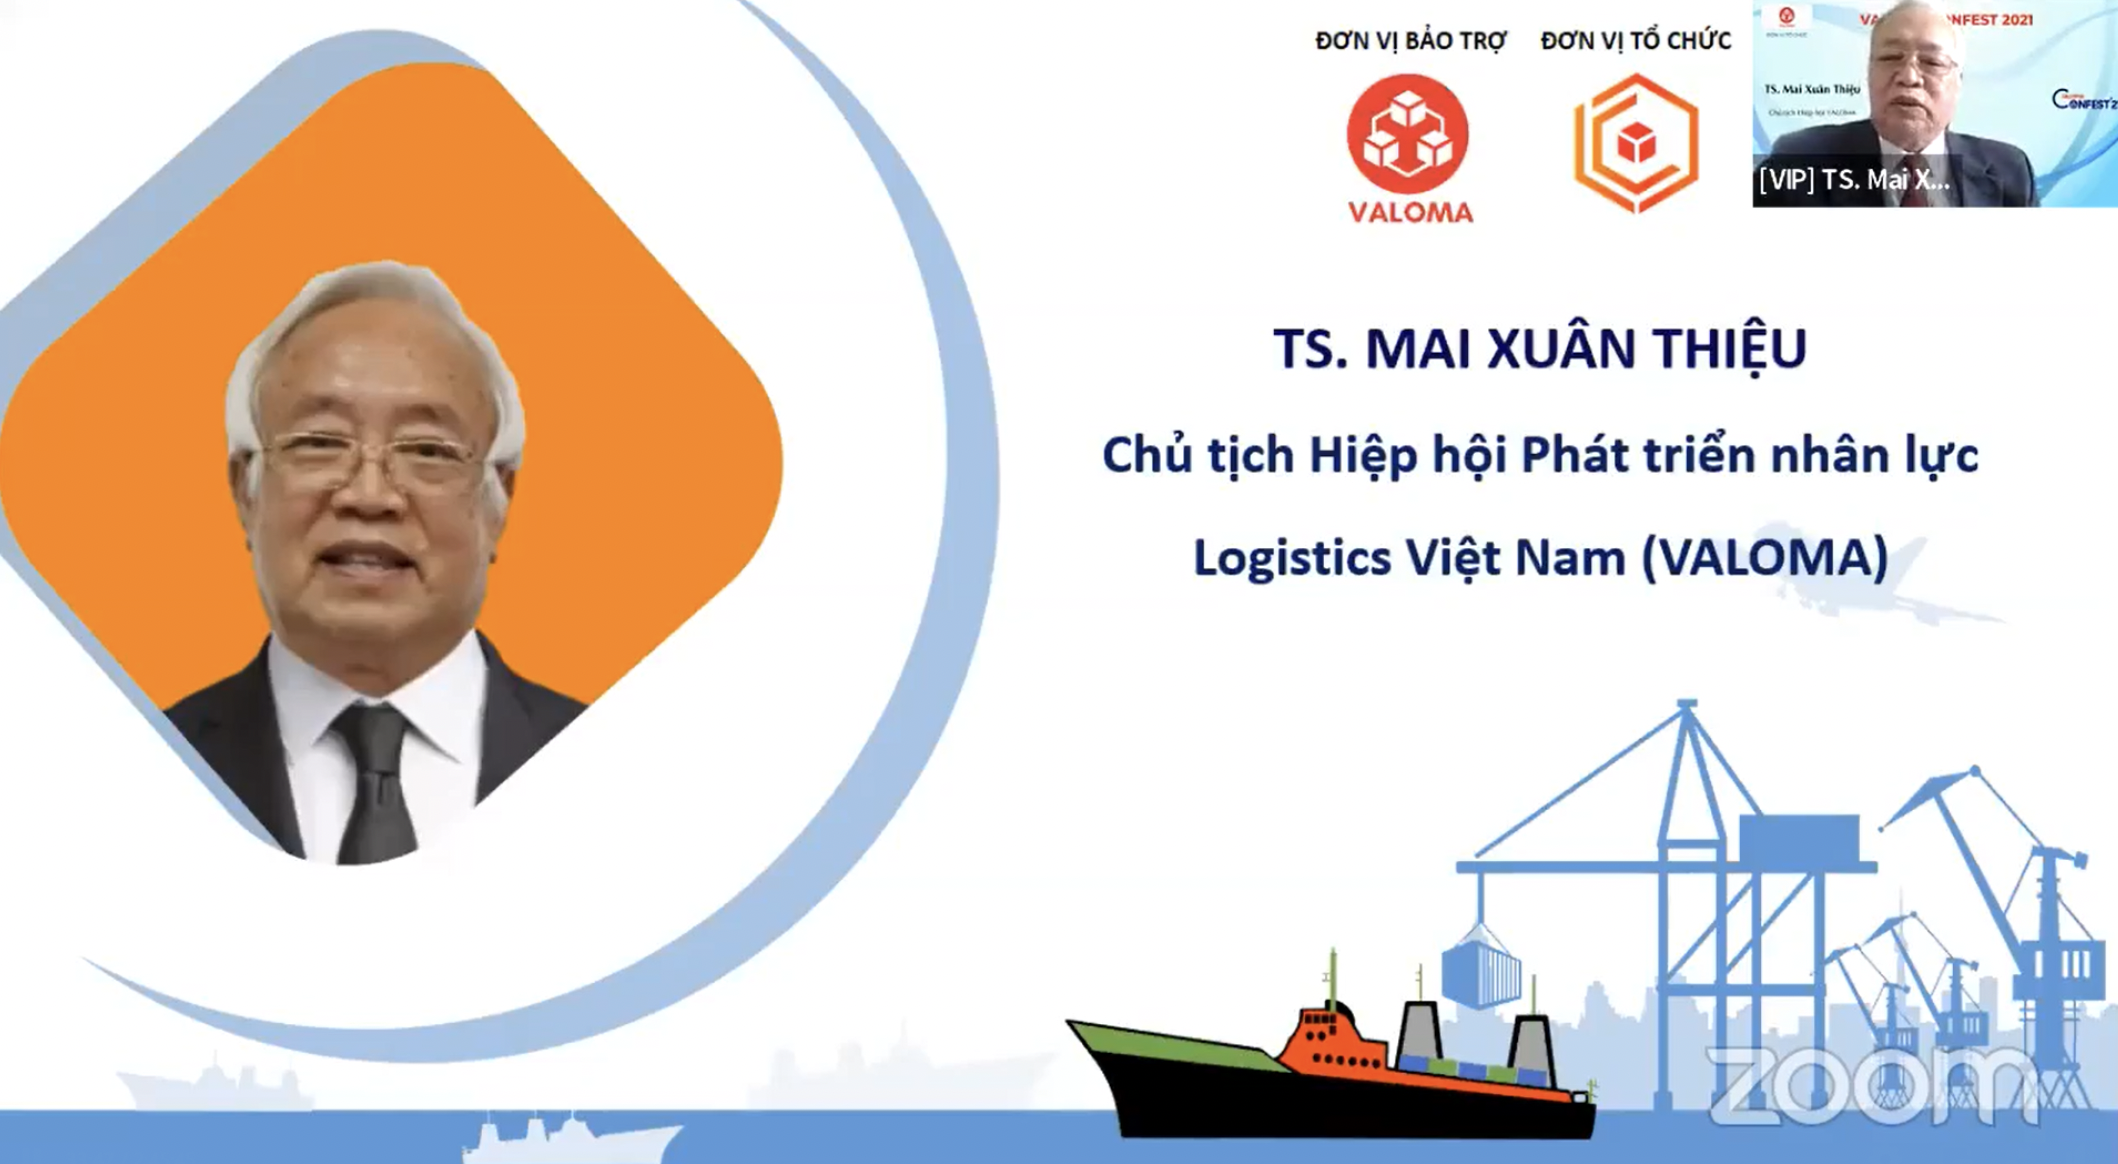 TS. Mai Xuân Thiệu - Chủ tịch Hiệp hội Phát triển nhân lực Logistics Việt Nam